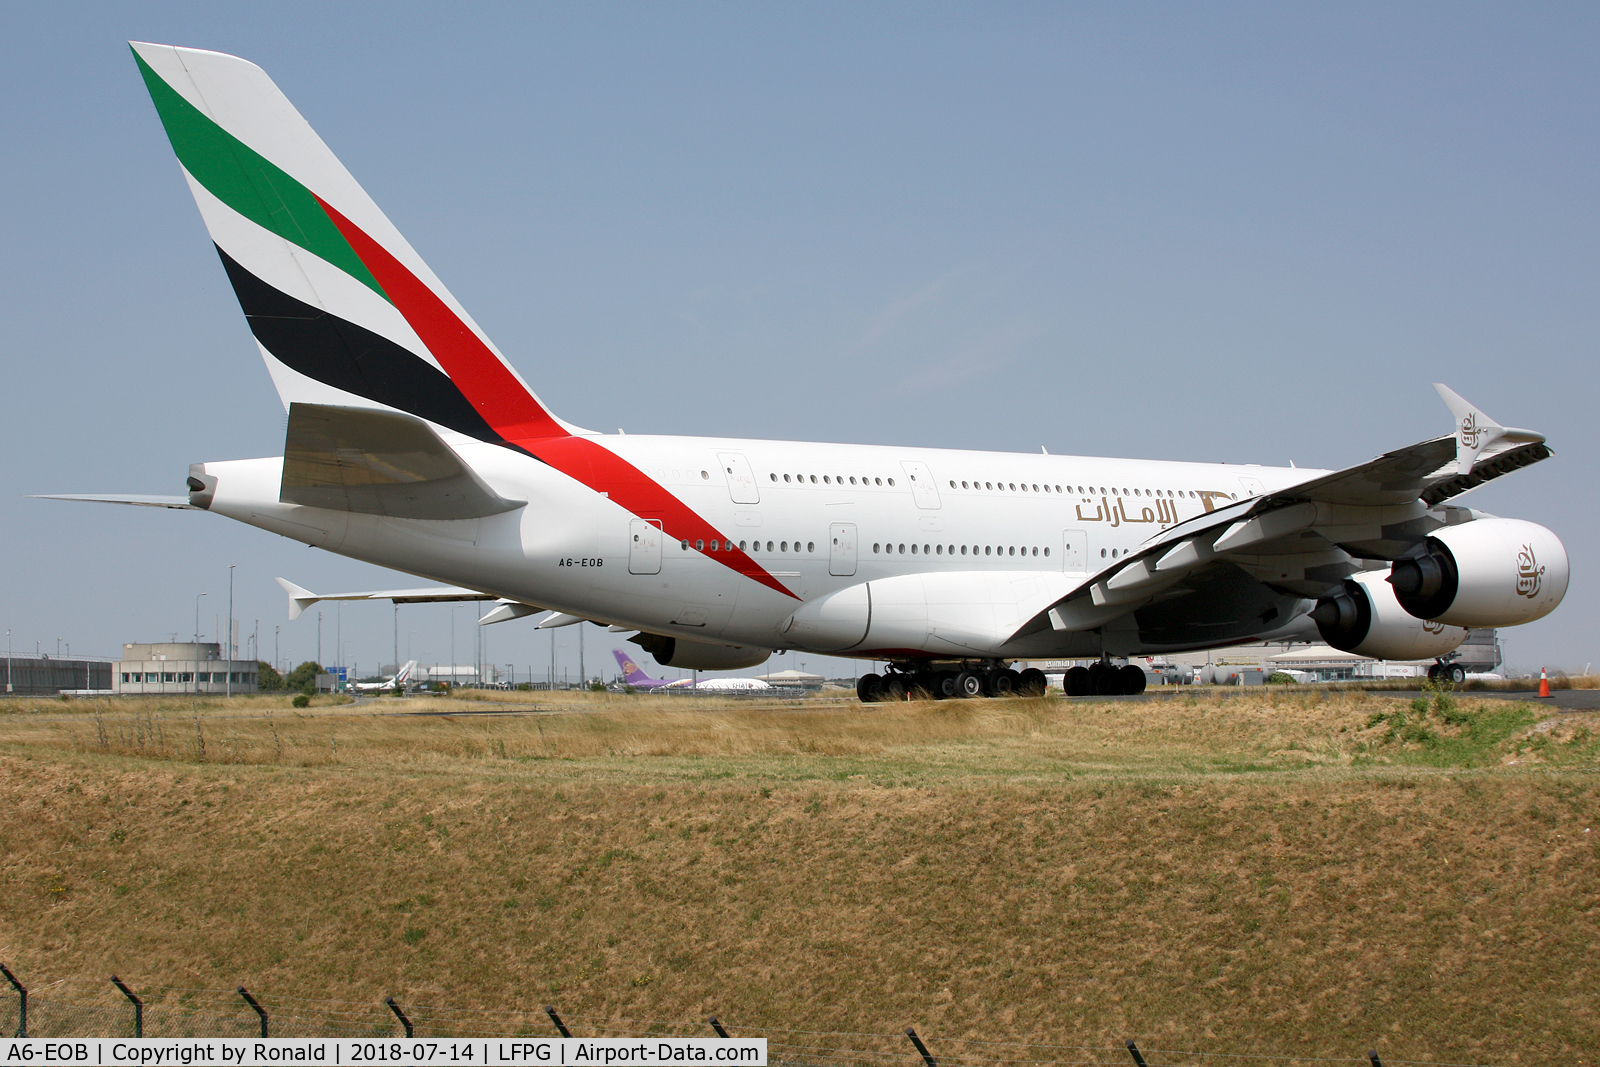 A6-EOB, 2014 Airbus A380-861 C/N 164, at cdg